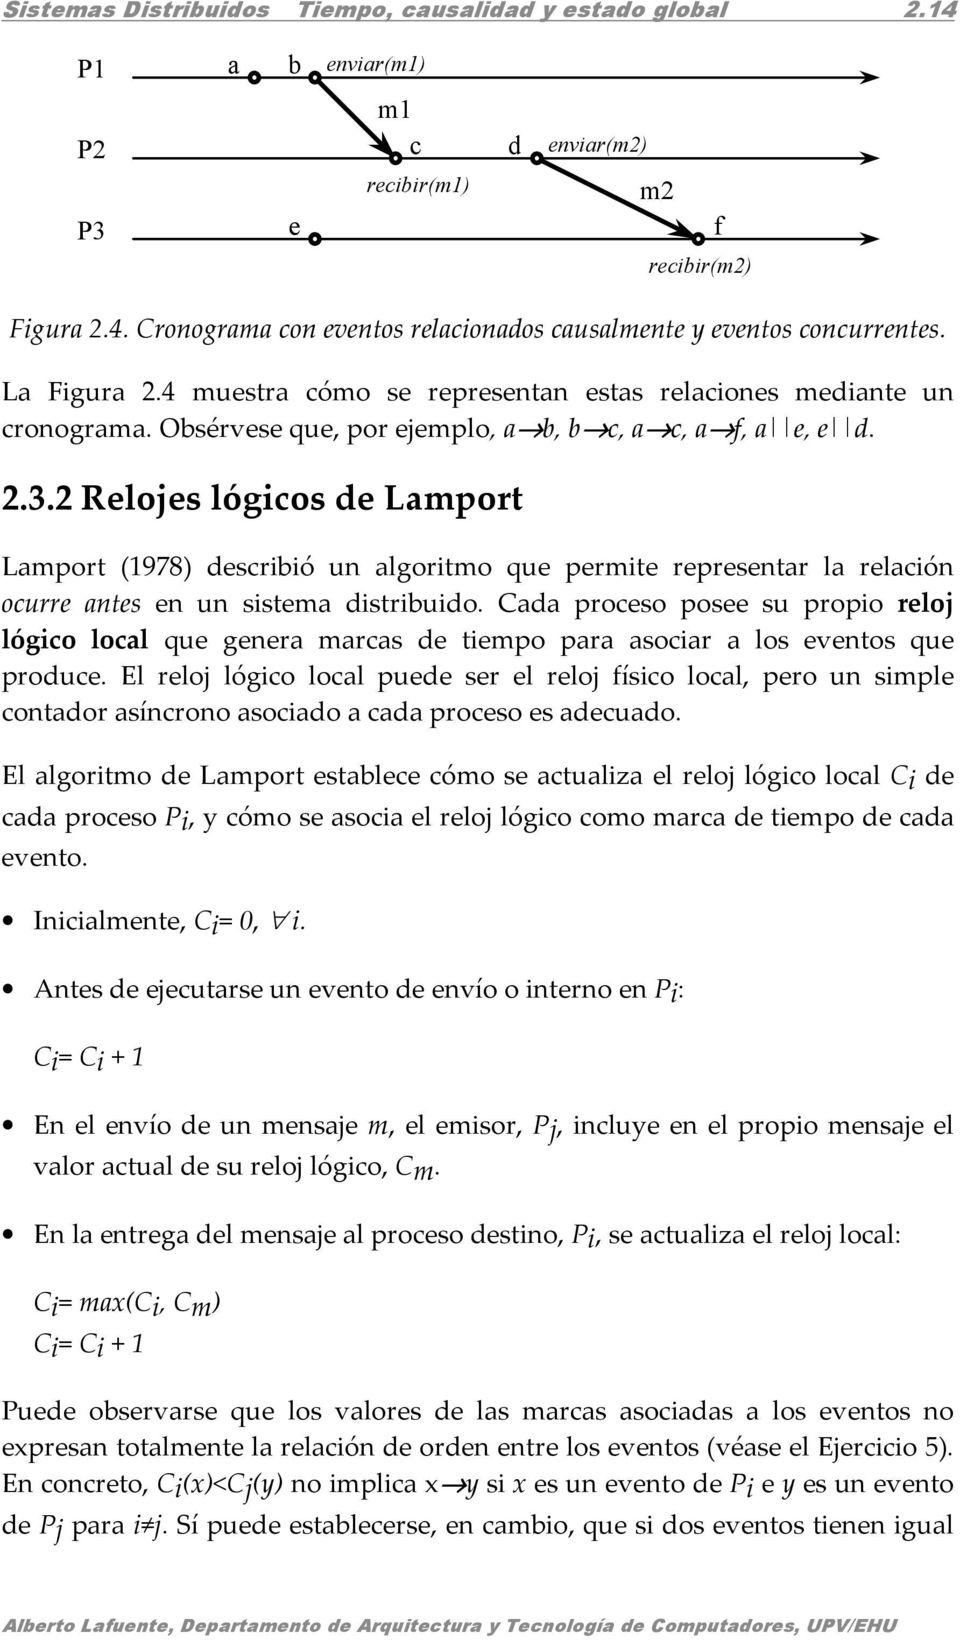 2 Relojes lógcos de Lamport Lamport (1978) descrbó un algortmo que permte representar la relacón ocurre antes en un sstema dstrbudo.